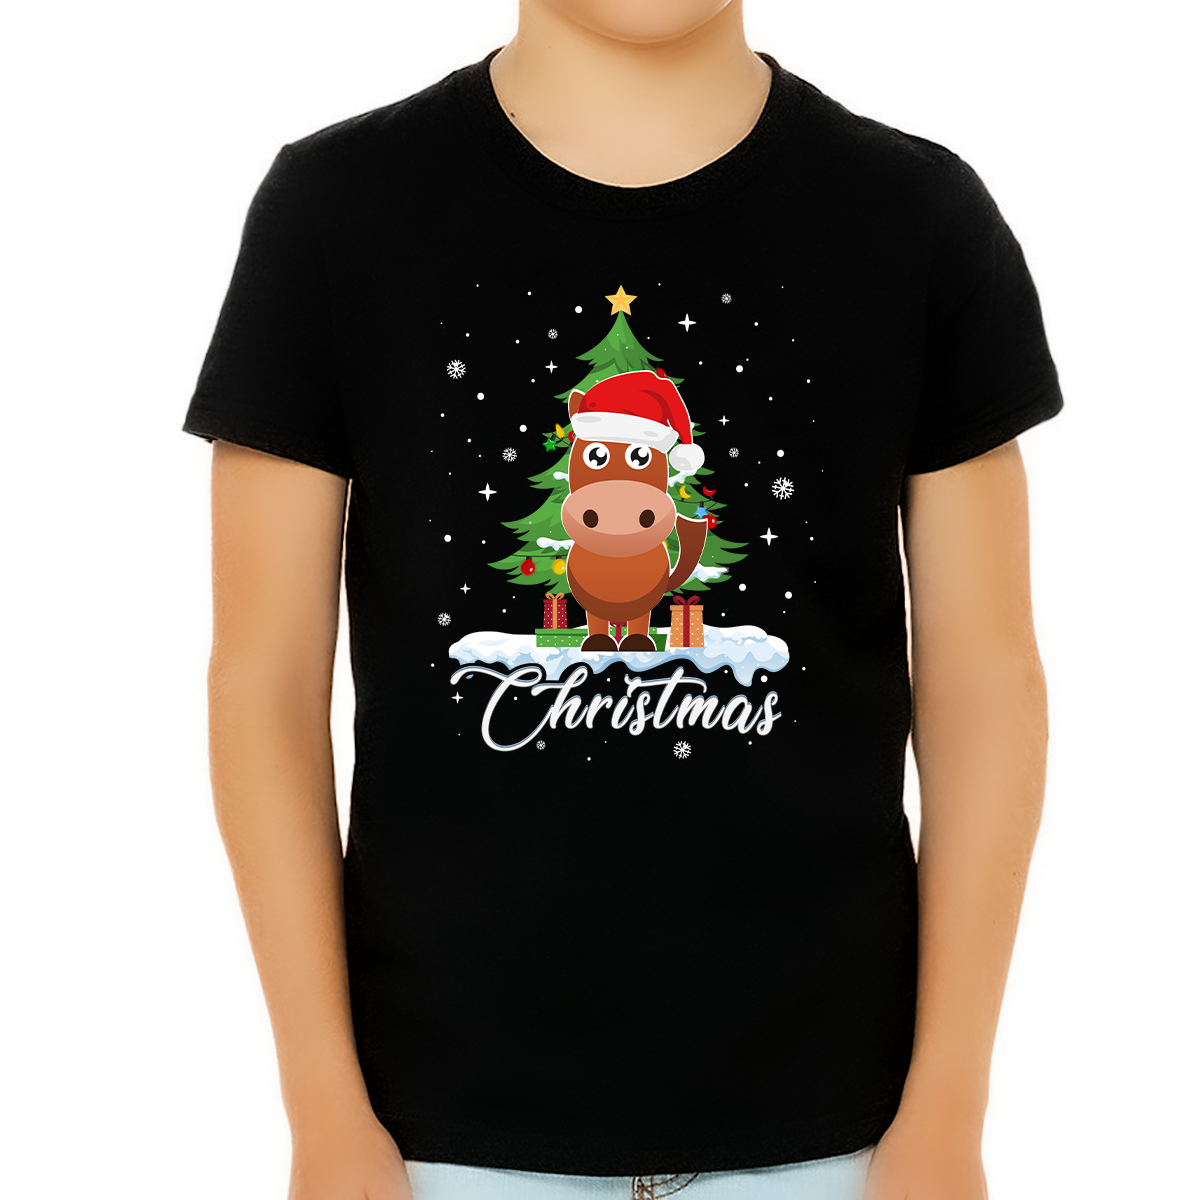 Boys Christmas Shirt Cute Cartoon Horse Christmas Shirts for Boys Christmas Shirts for Kids